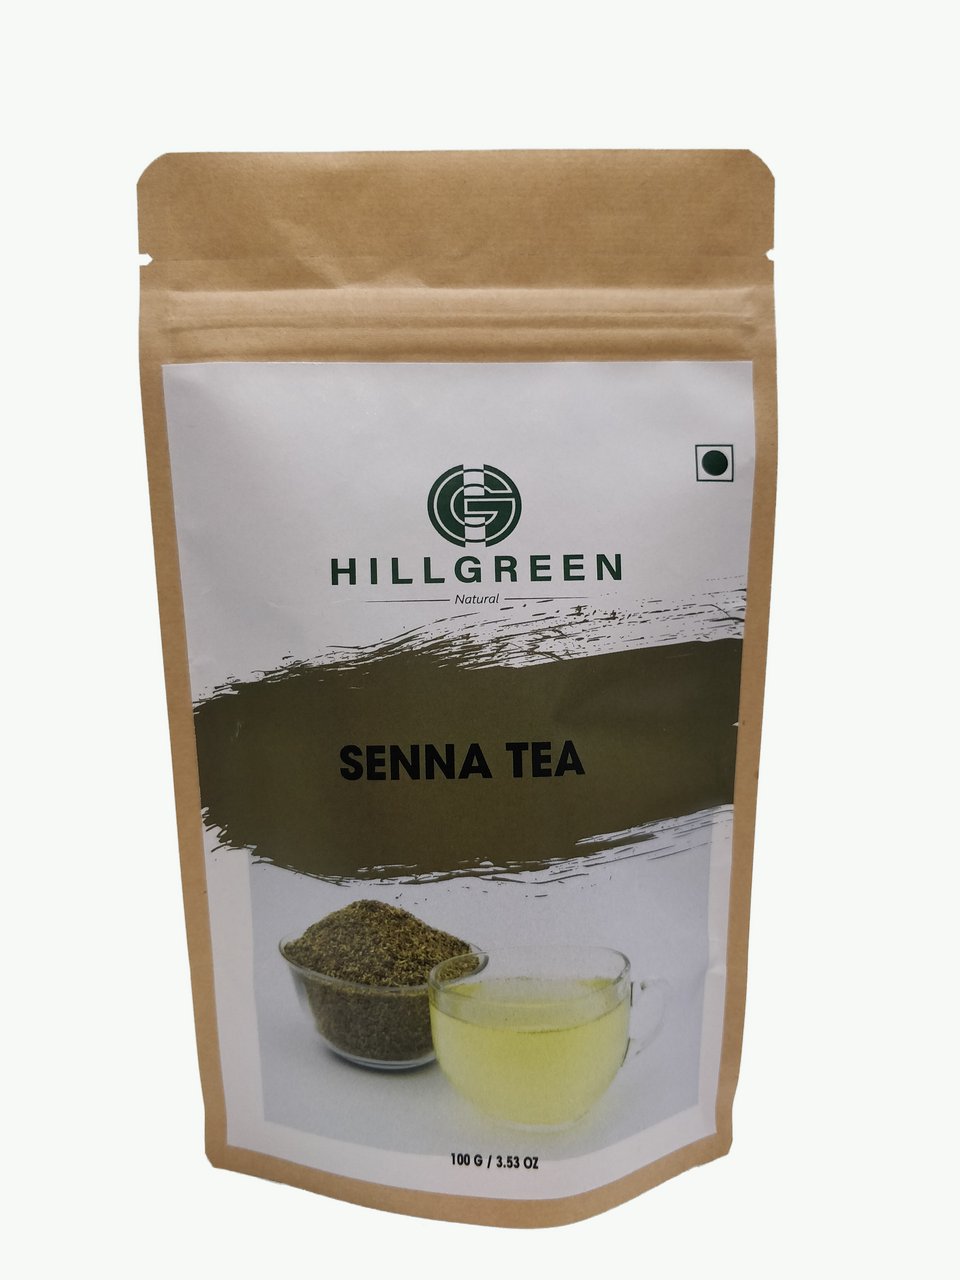 Senna Tea Hillgreen Natural